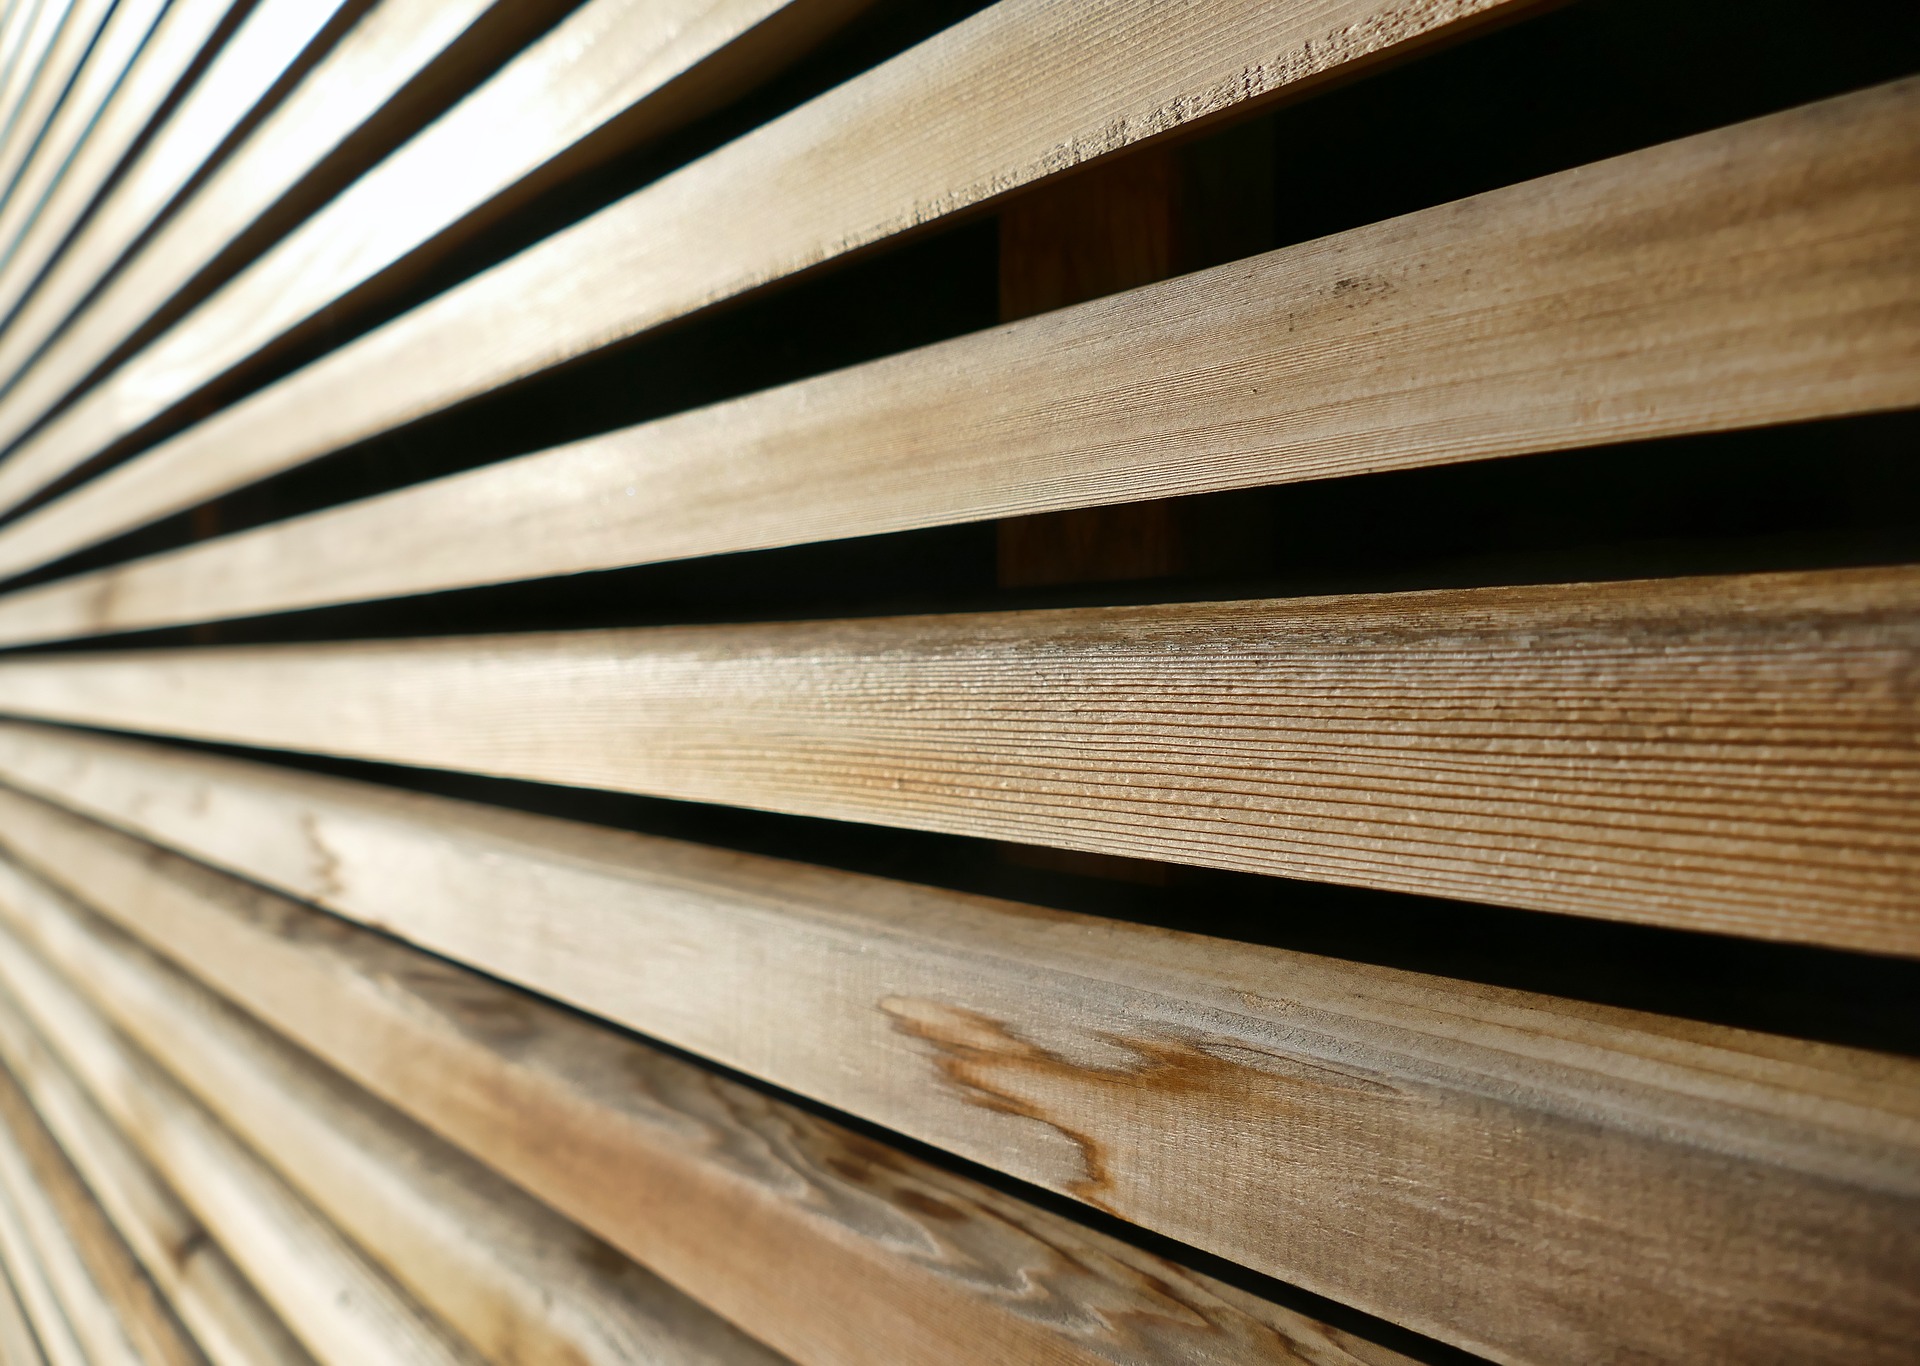 Planches de bois